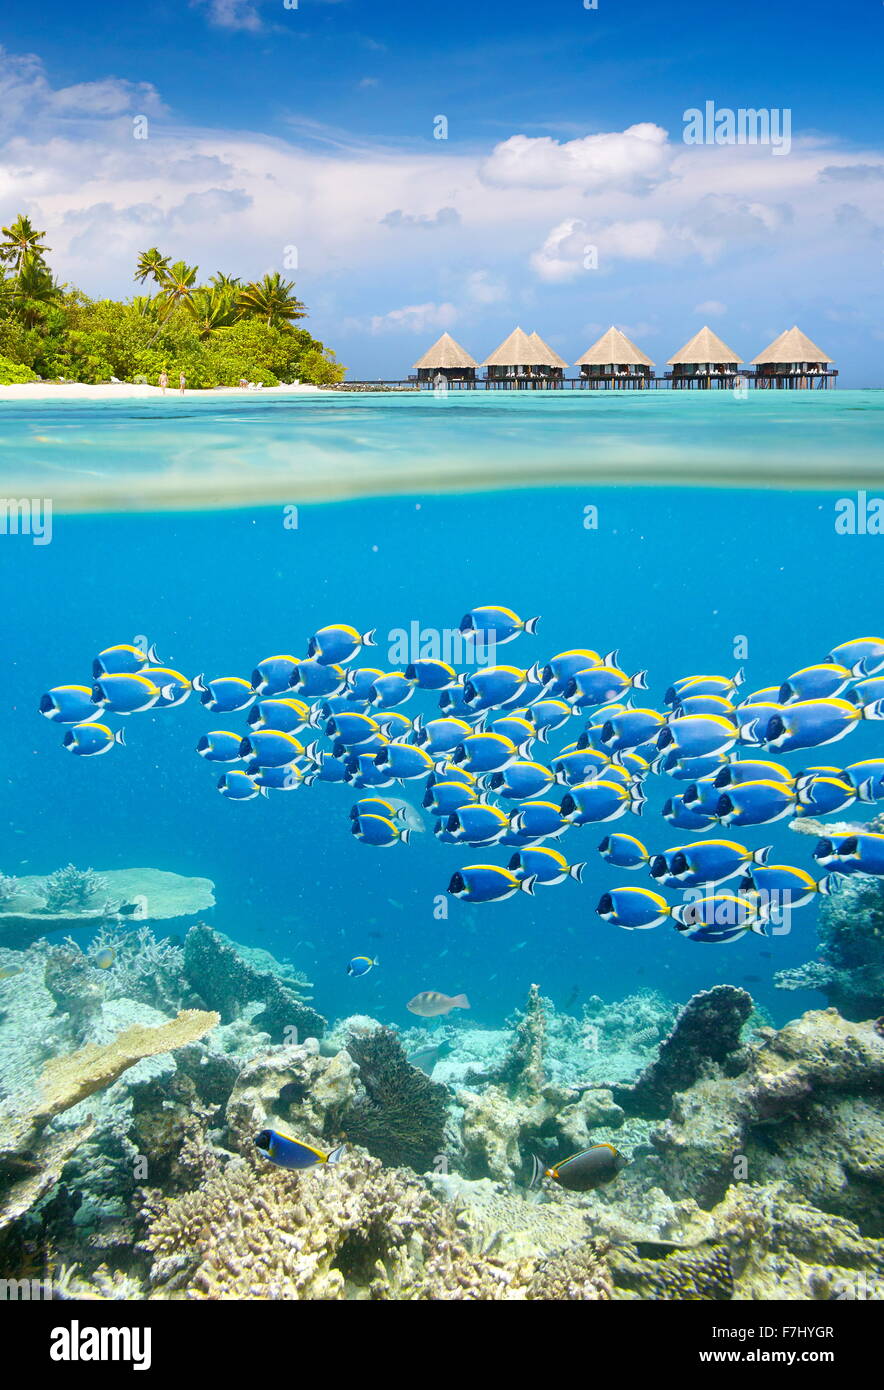 Maldives Island - tropical vue sous-marine avec banc de poissons Banque D'Images